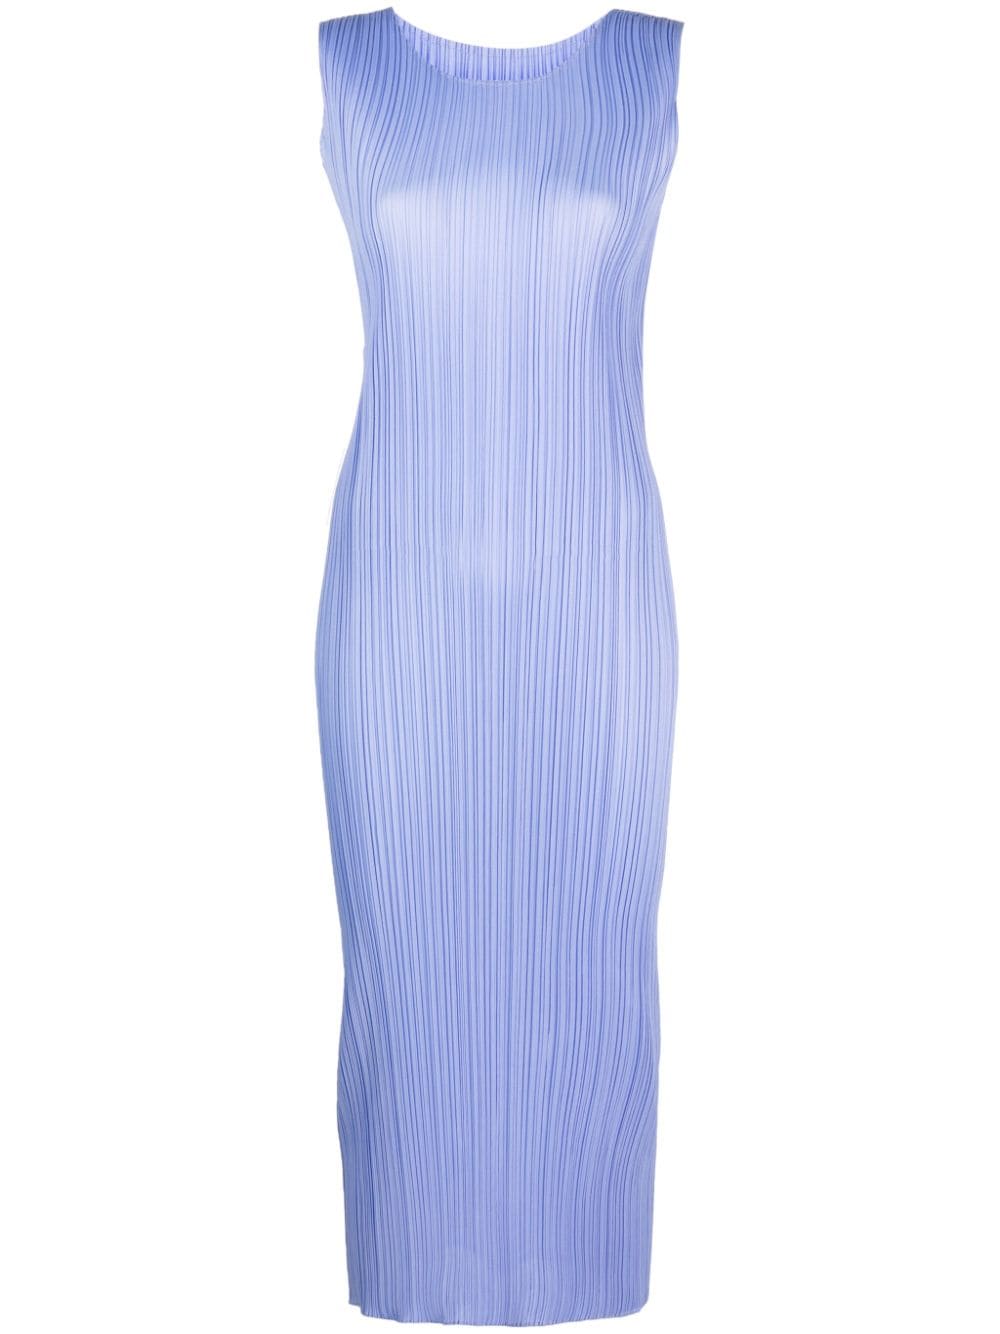 pleat-detail maxi pencil dress